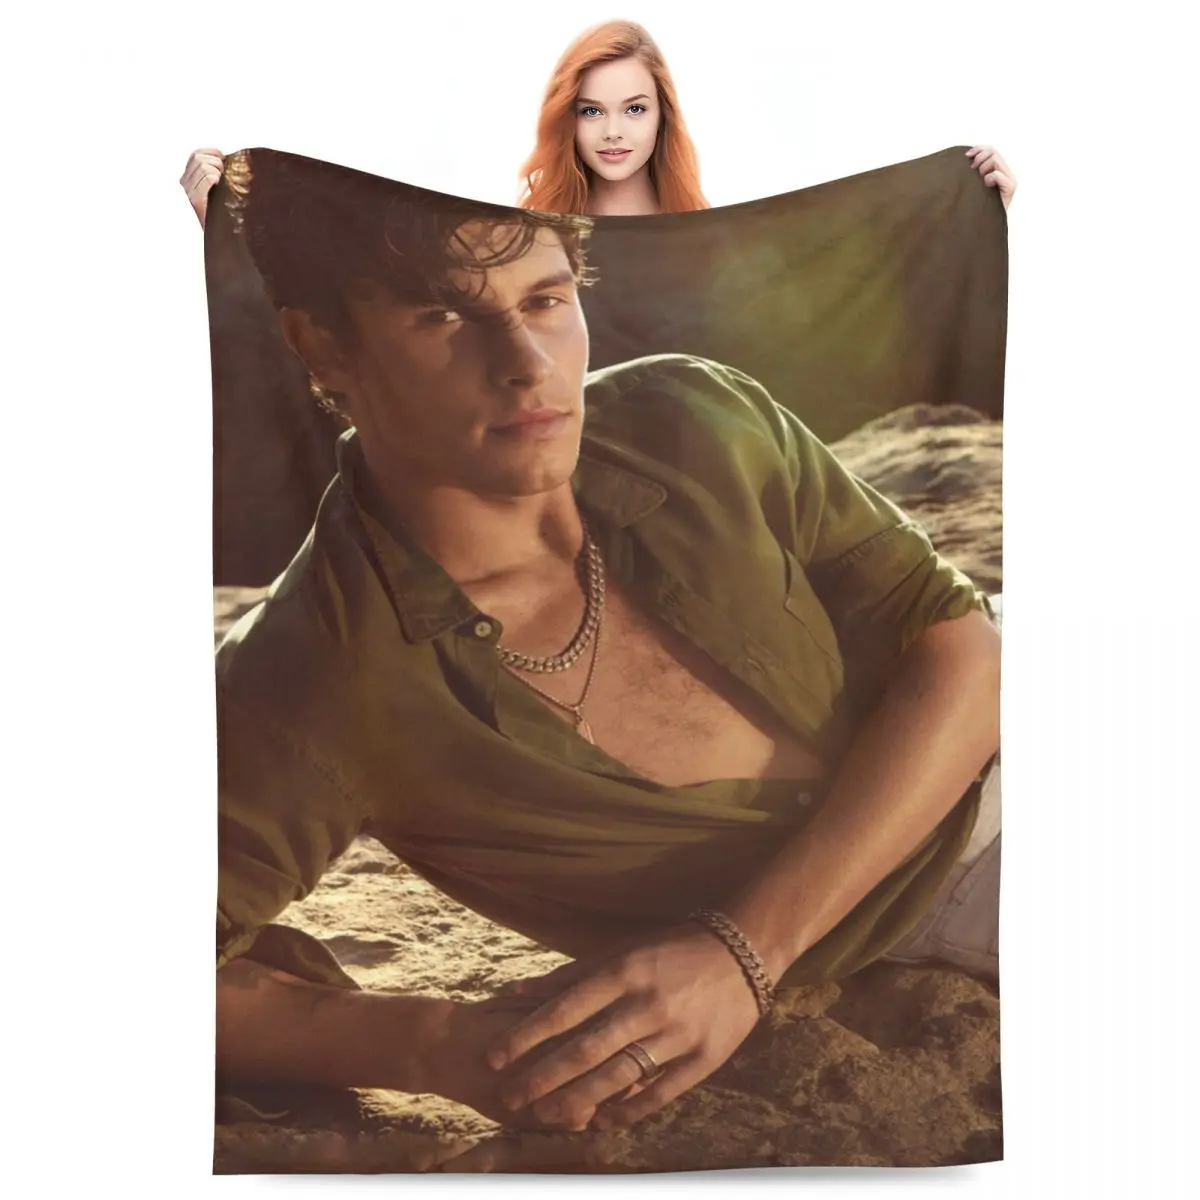 

Фланелевое Одеяло S-Shawn Mendes, музыкальный певец, теплые мягкие постельные принадлежности, пледы для дивана, кровати, кемпинга, искусственное покрывало для дивана